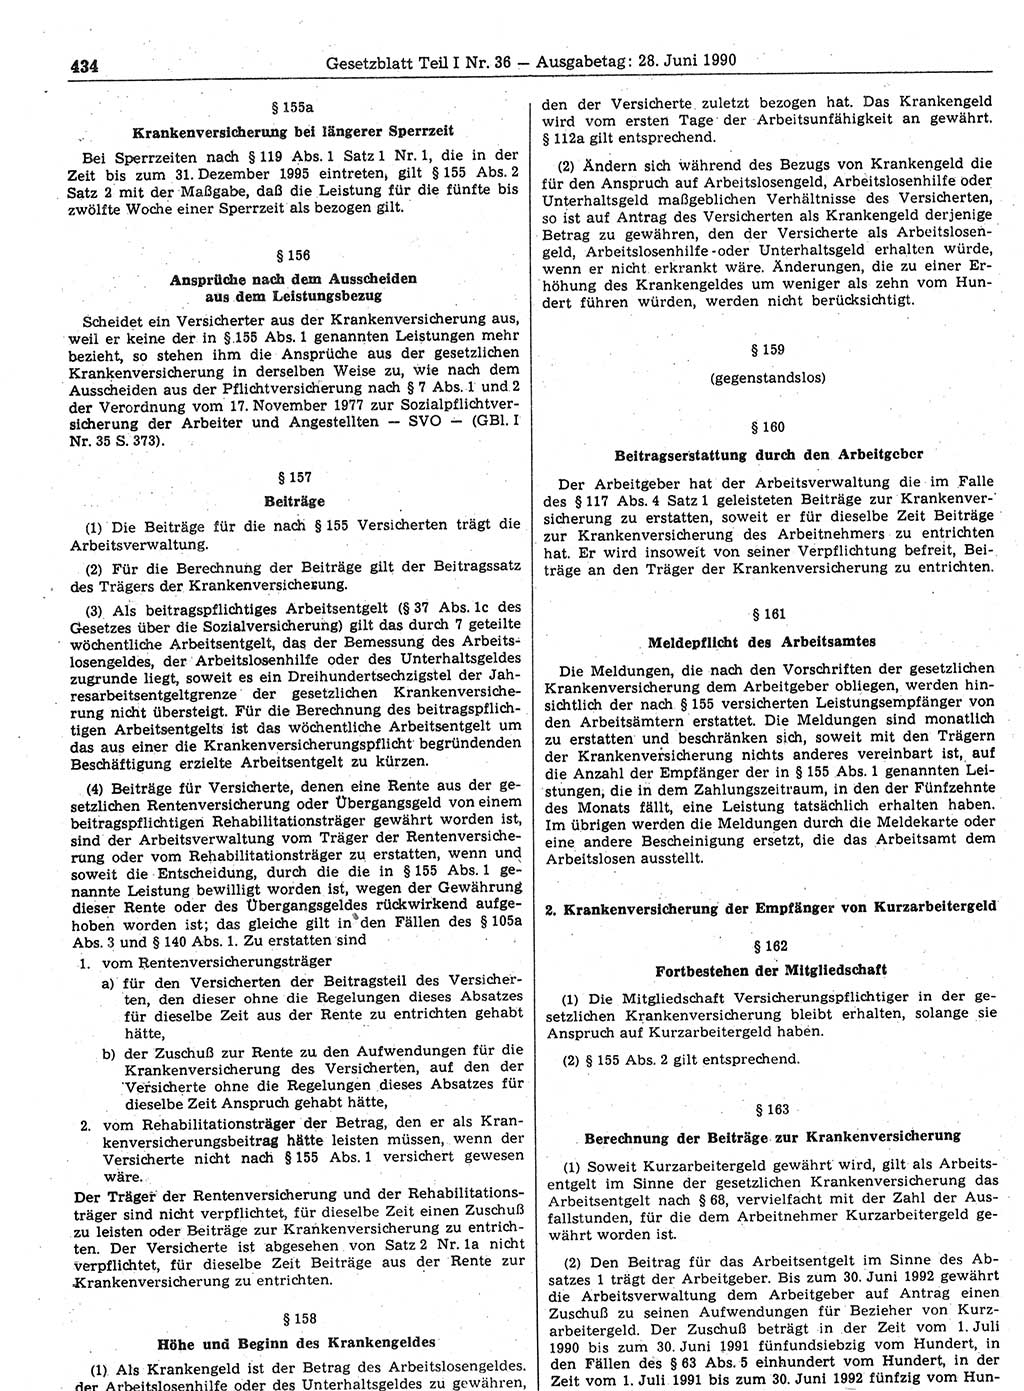 Gesetzblatt (GBl.) der Deutschen Demokratischen Republik (DDR) Teil Ⅰ 1990, Seite 434 (GBl. DDR Ⅰ 1990, S. 434)